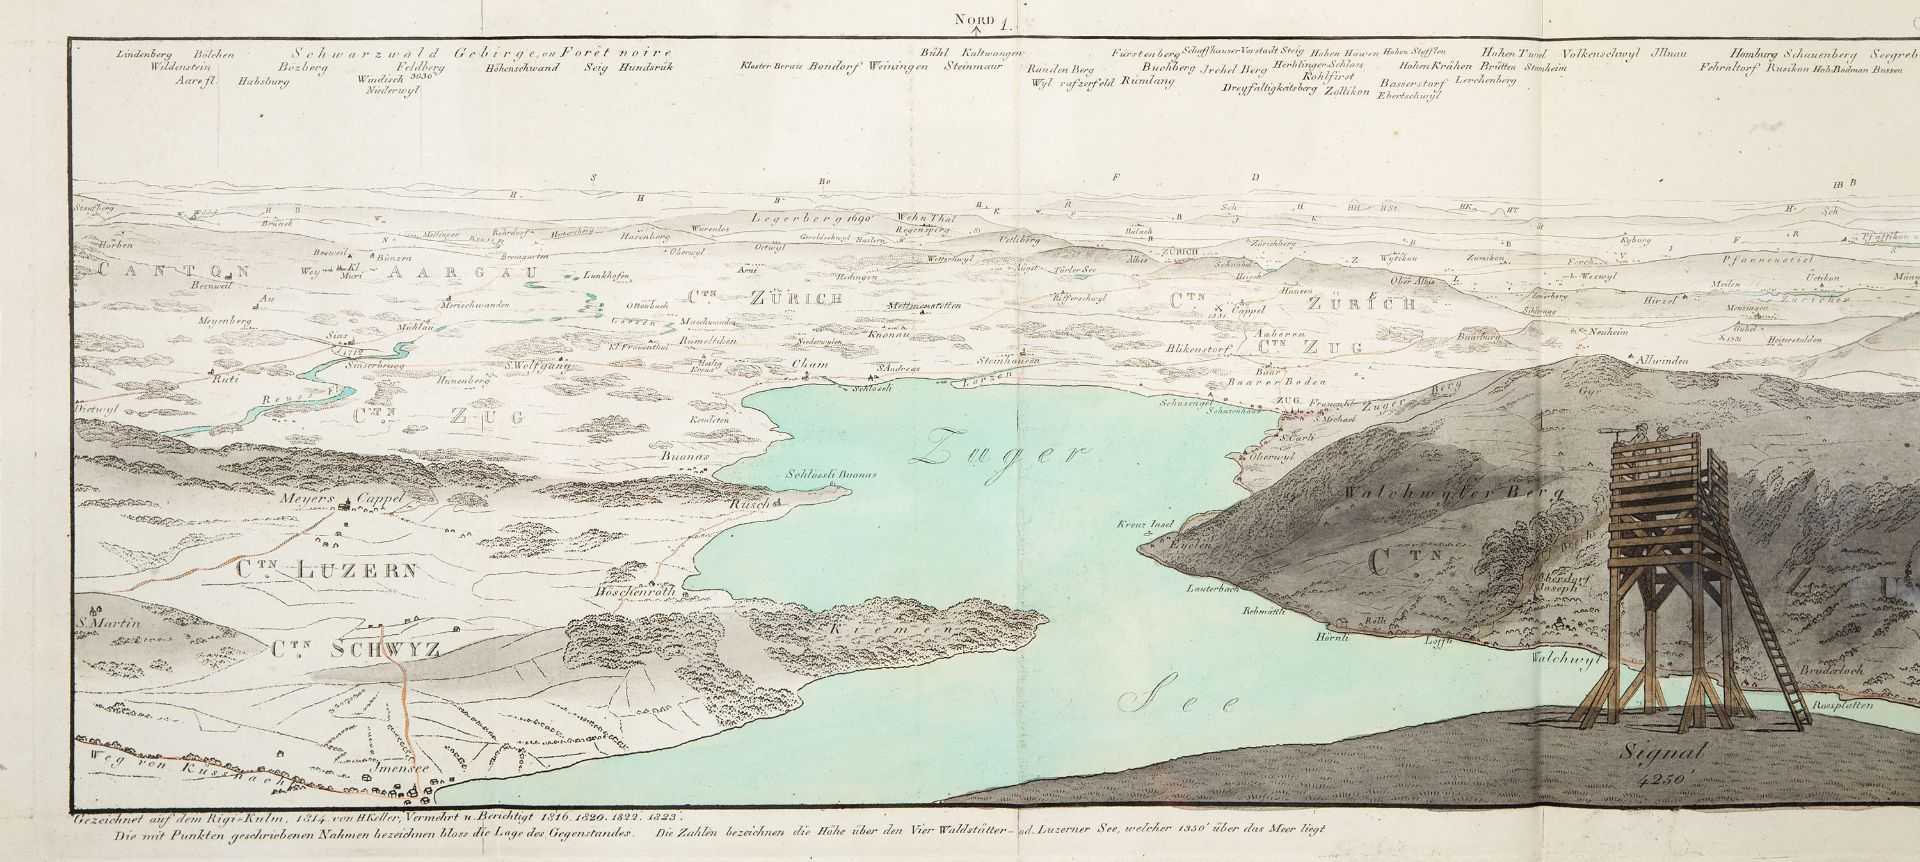 H. Keller, Panorama vom Rigi Berg gezeichnet. Zürich 1823. - Mit Beiheft "Beschreibung des Rigibergs - Image 2 of 7